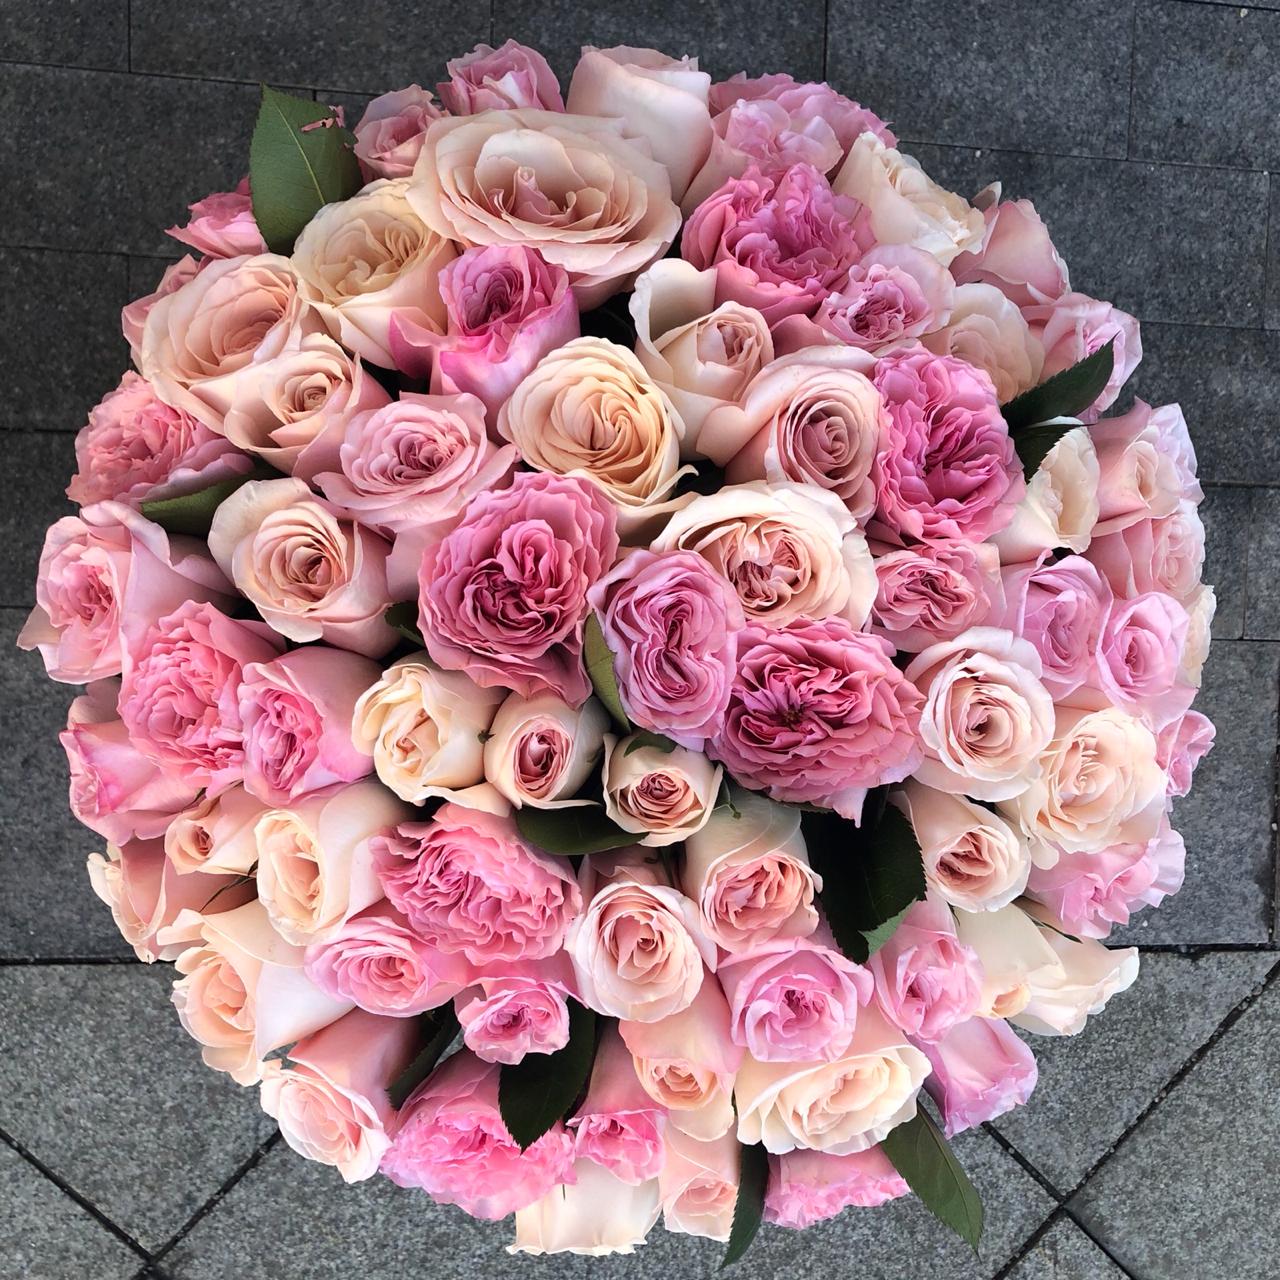 Где заказать красивые букеты роз и другие цветы в Москве